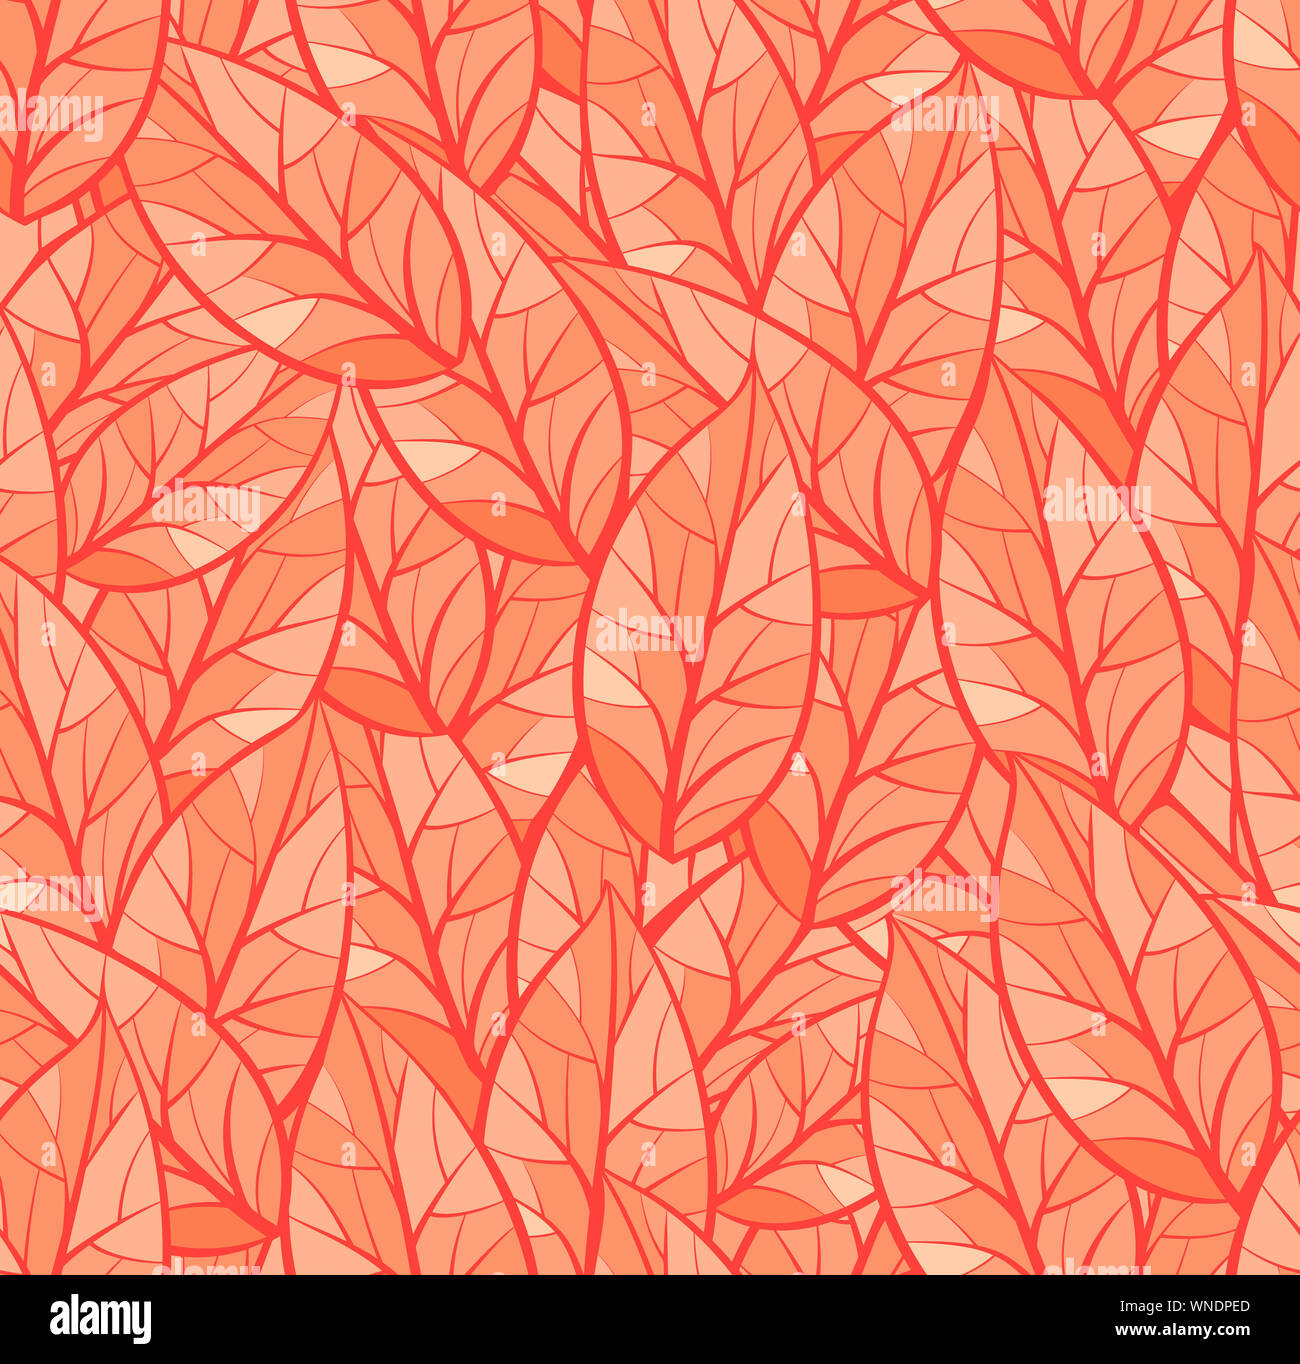 Zusammenfassung nahtlose Vektor Anordnung von Blättern. Hintergrund Textur. Orange collor für Paletten Stockfoto